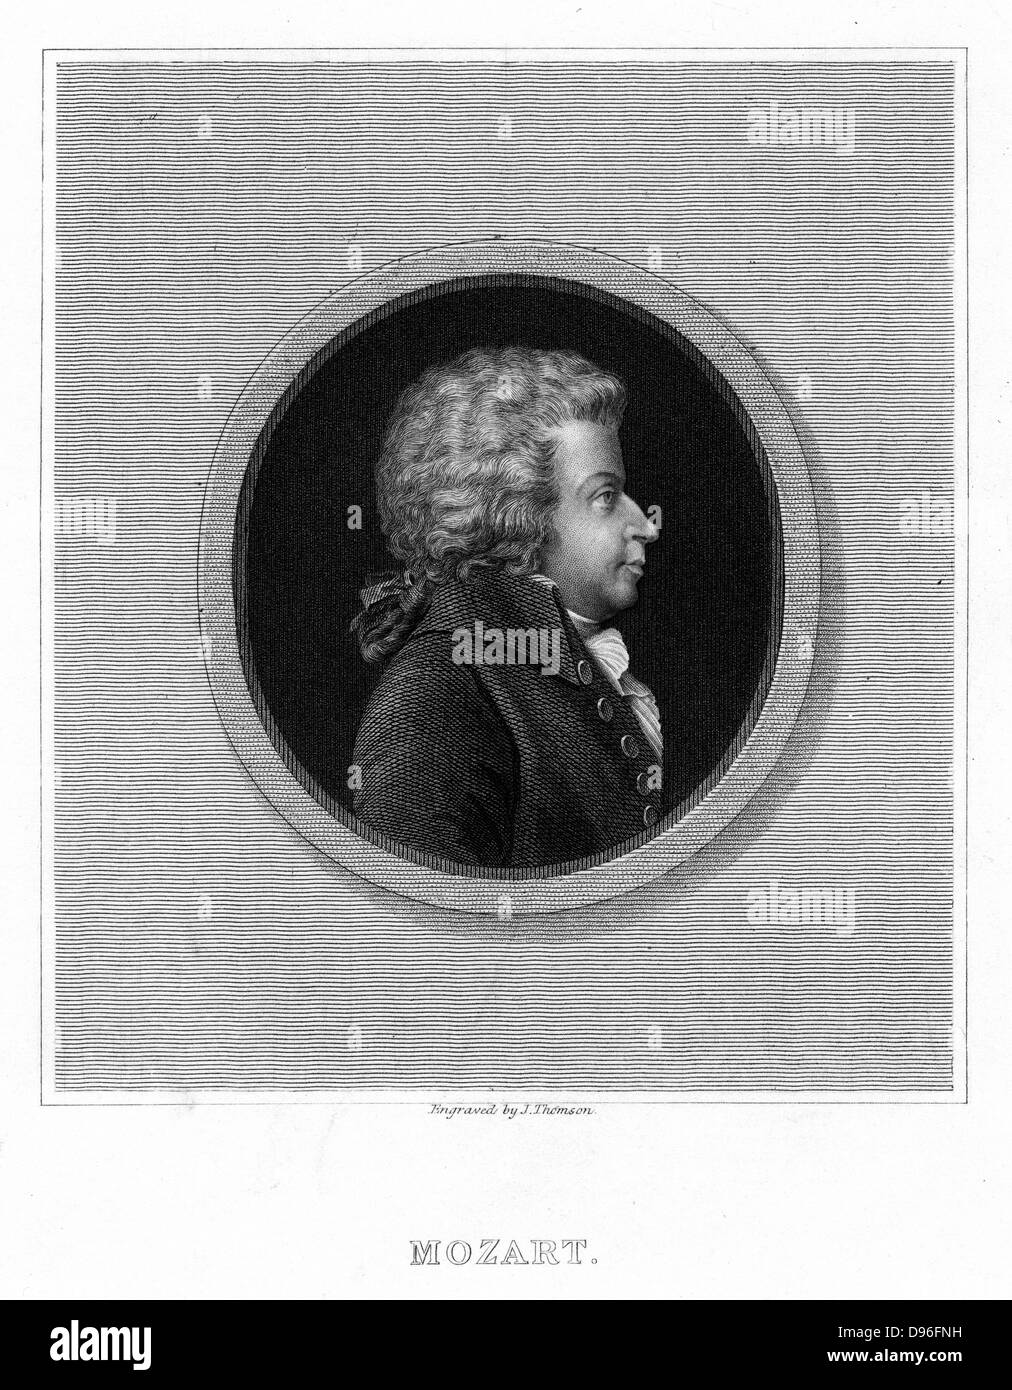 Wolfgang Amadeus Mozart (1756-1791), compositeur autrichien. À partir de 'La galerie de portraits" par Charles Knight. (Londres, 1837). Banque D'Images